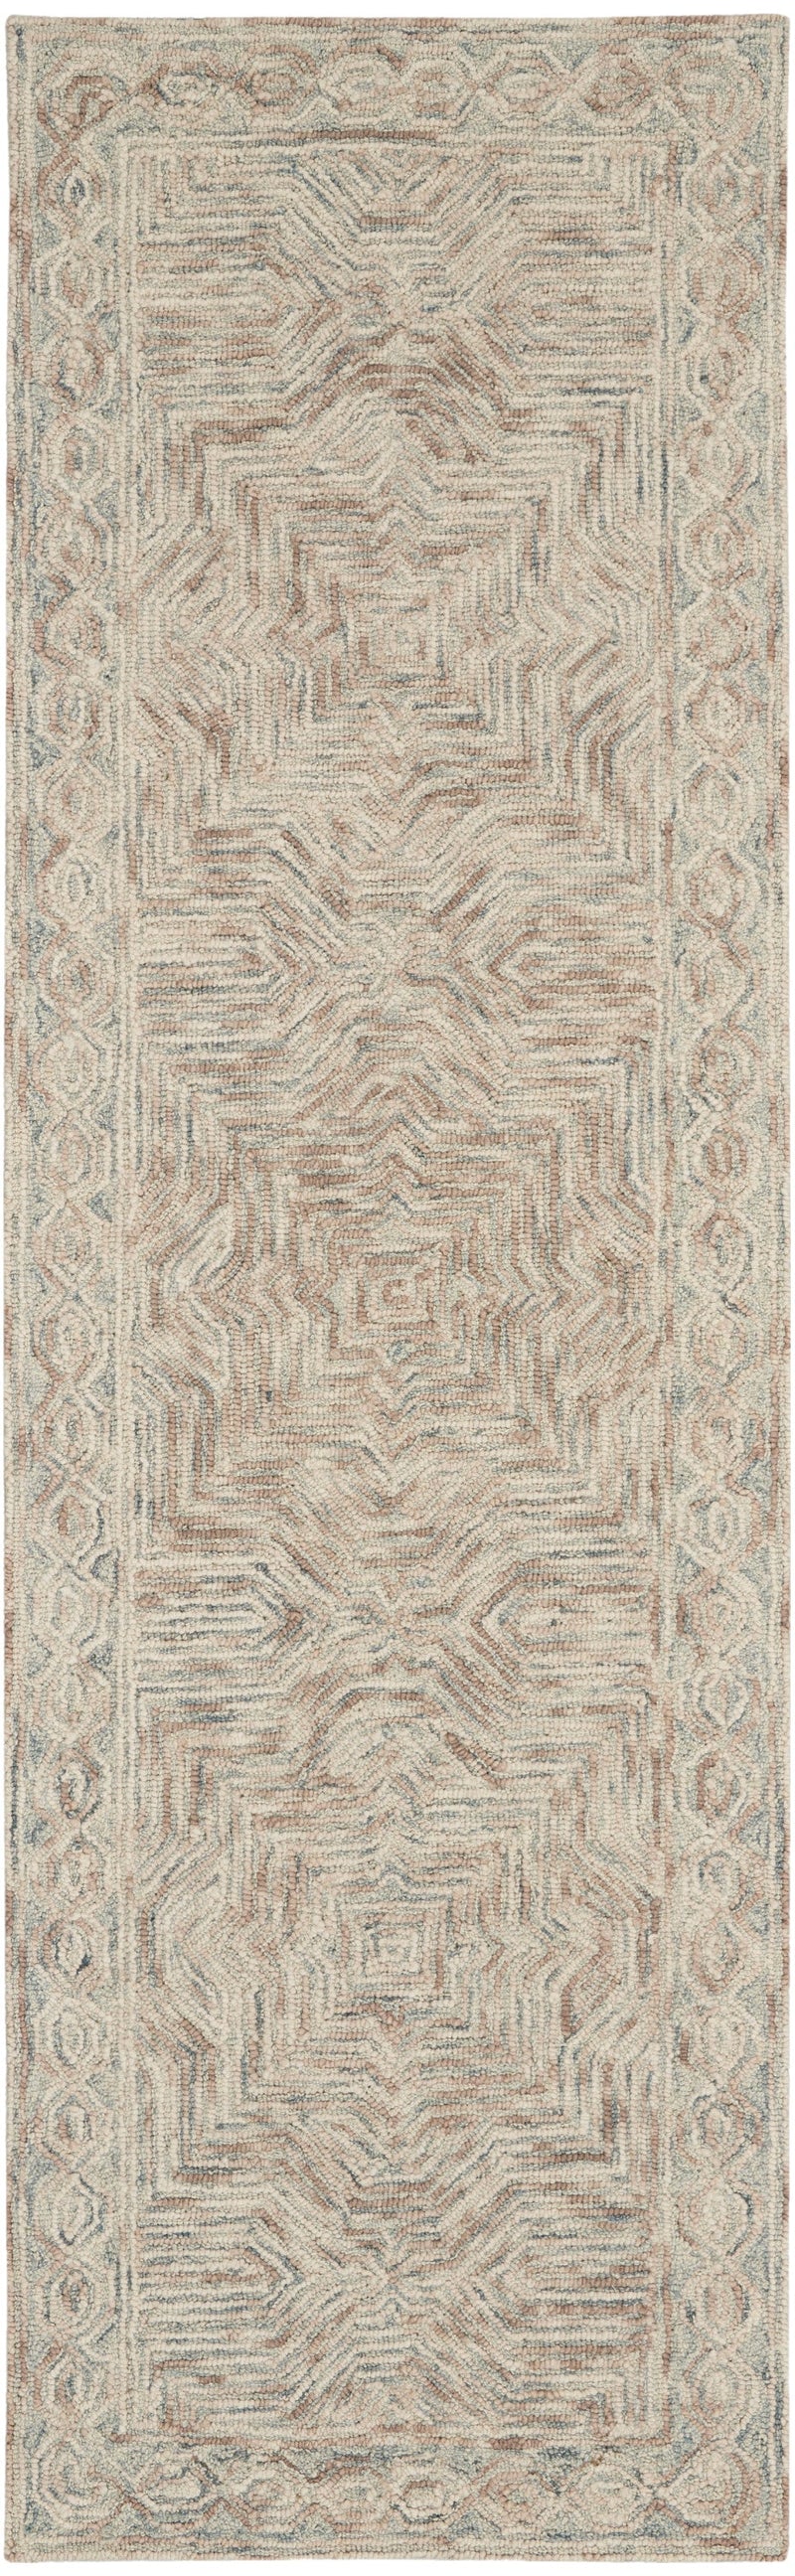 media image for interlock handmade blue ivory rug by nourison 99446785985 redo 2 295